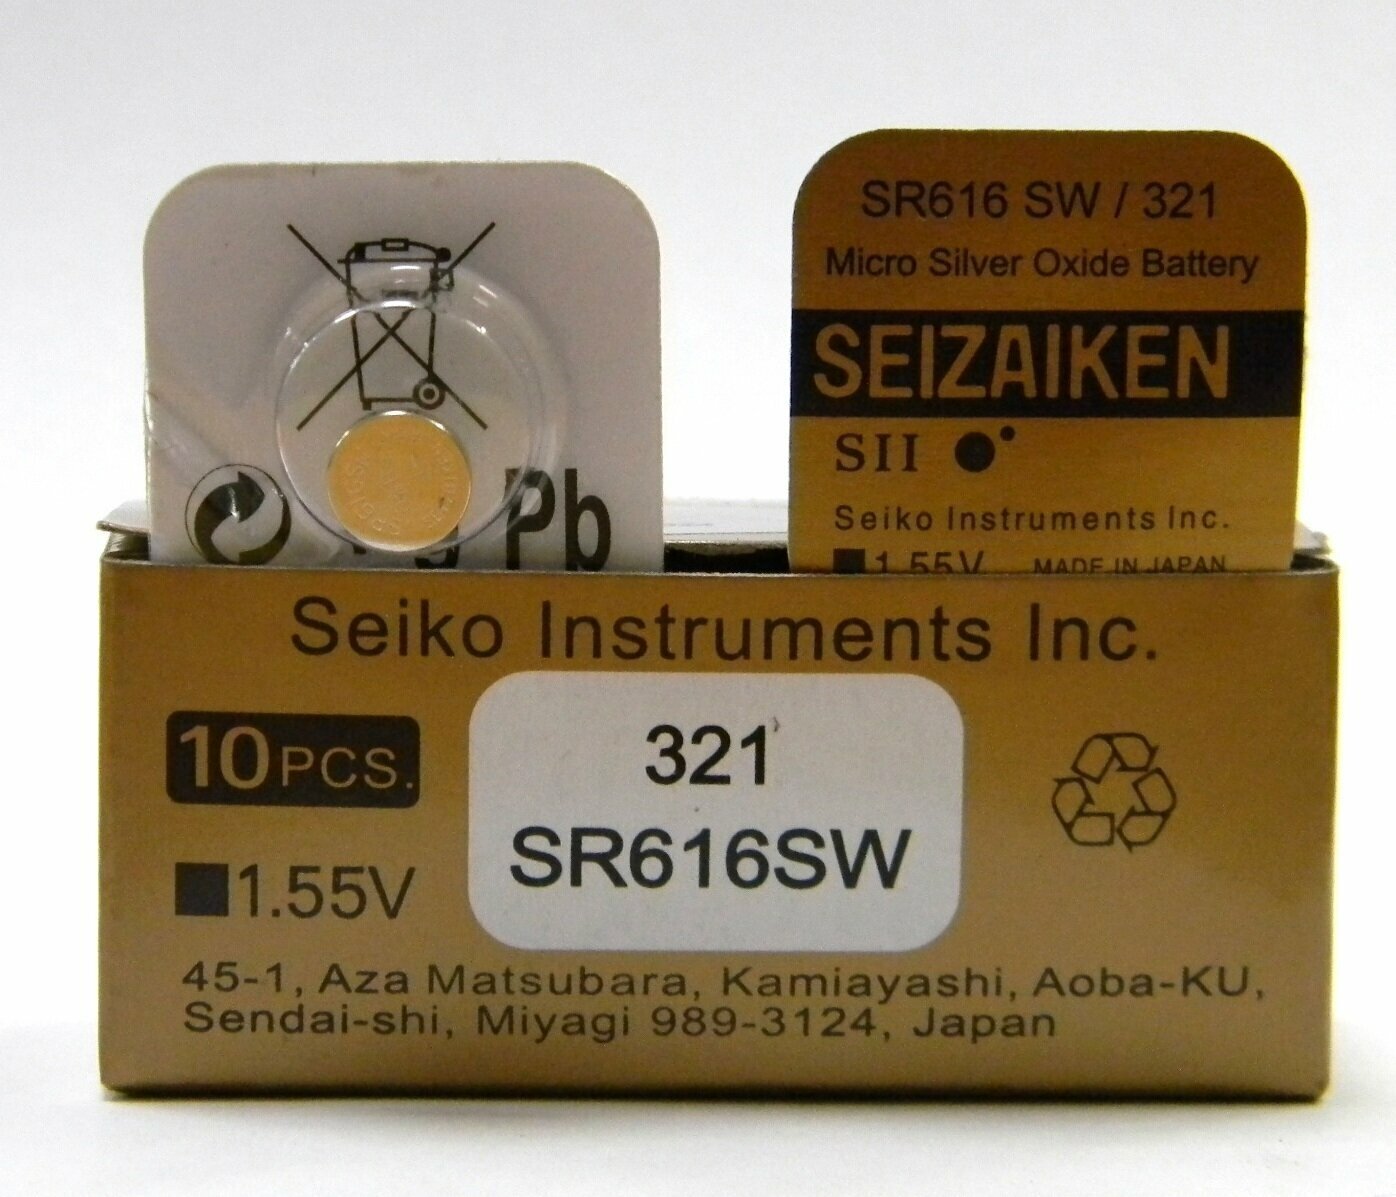 Батарейка SEIZAIKEN (Seiko) SR 321 (616 SW) 1шт